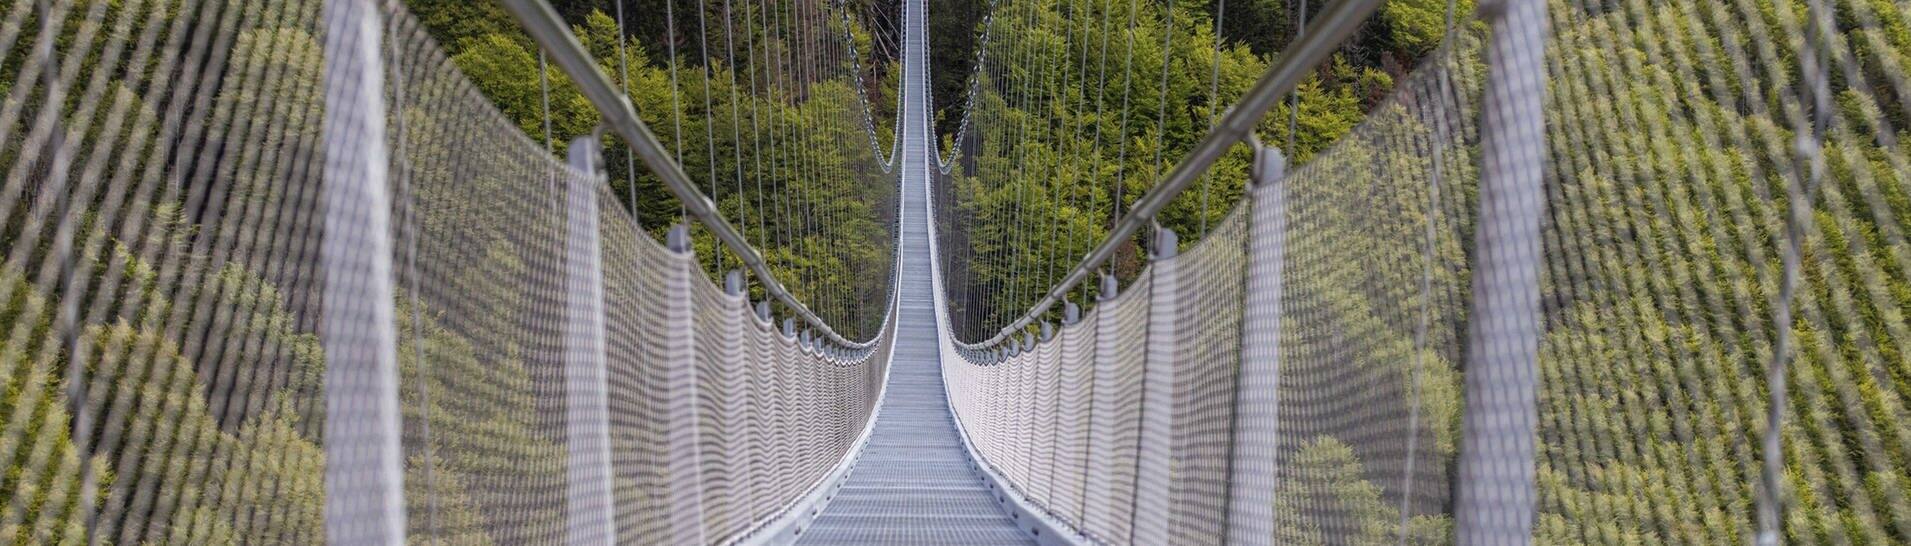 Eine Hängebrücke führt über ein Tal nahe Todtnauberg. Die „Blackforestline“ über den Todtnauer Wasserfall ist 450 Meter lang.